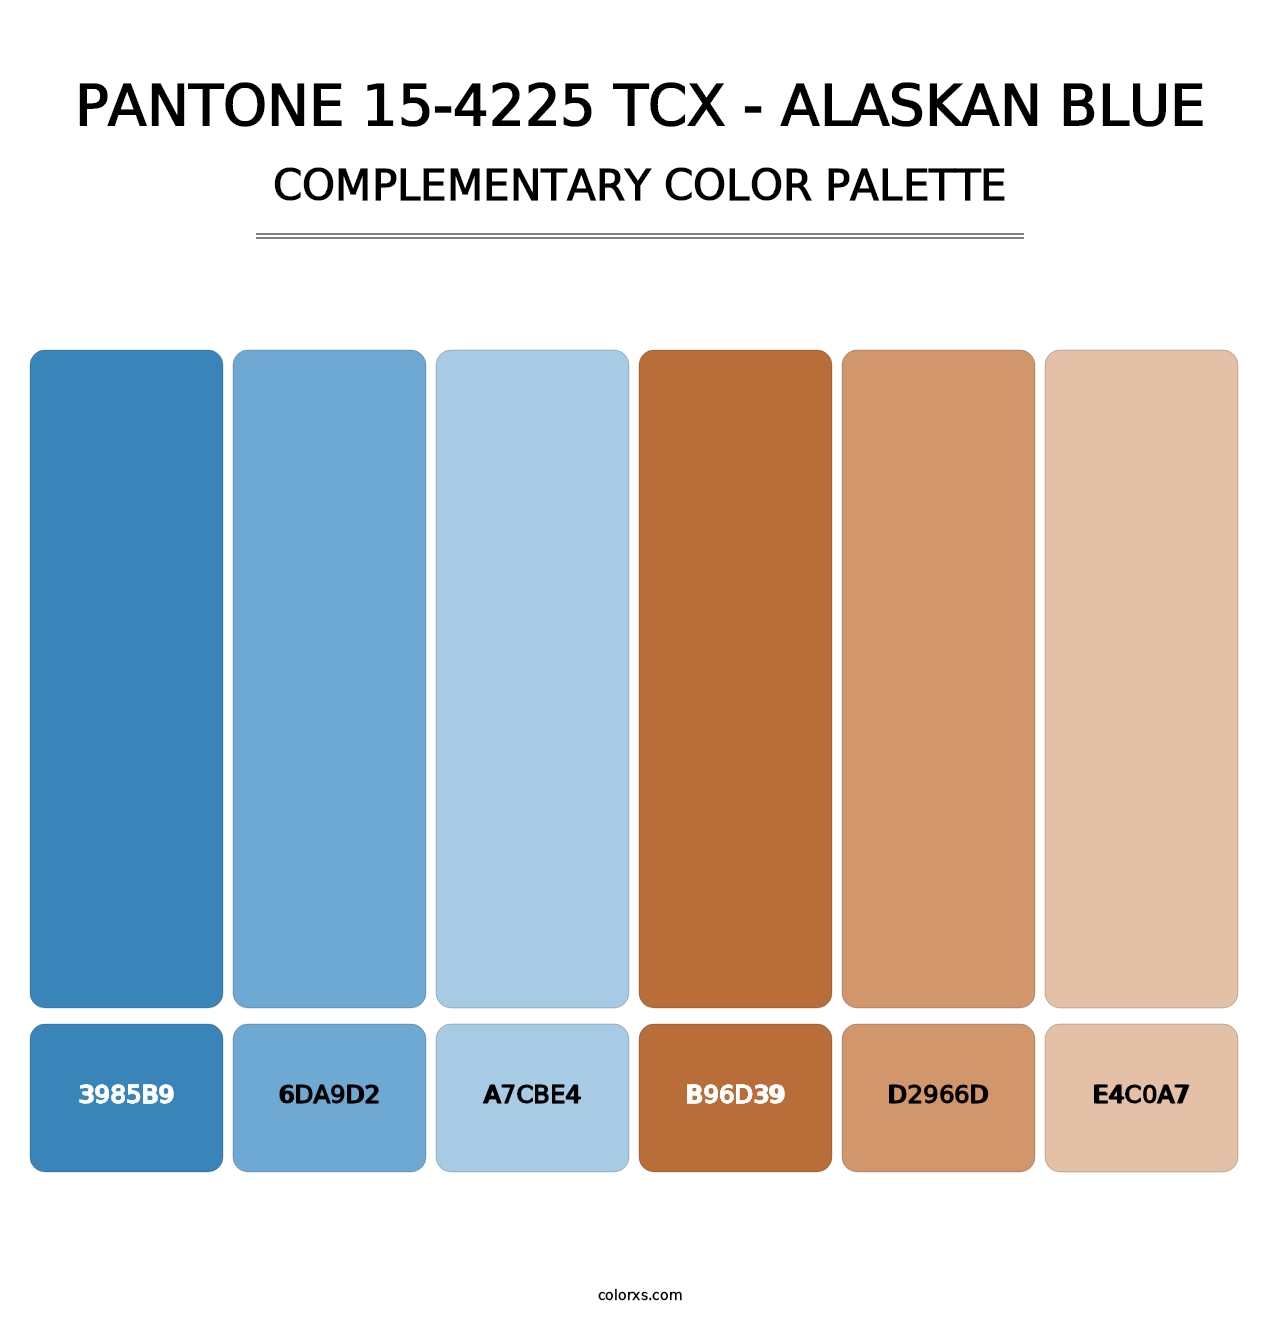 PANTONE 15-4225 TCX - Alaskan Blue - Complementary Color Palette